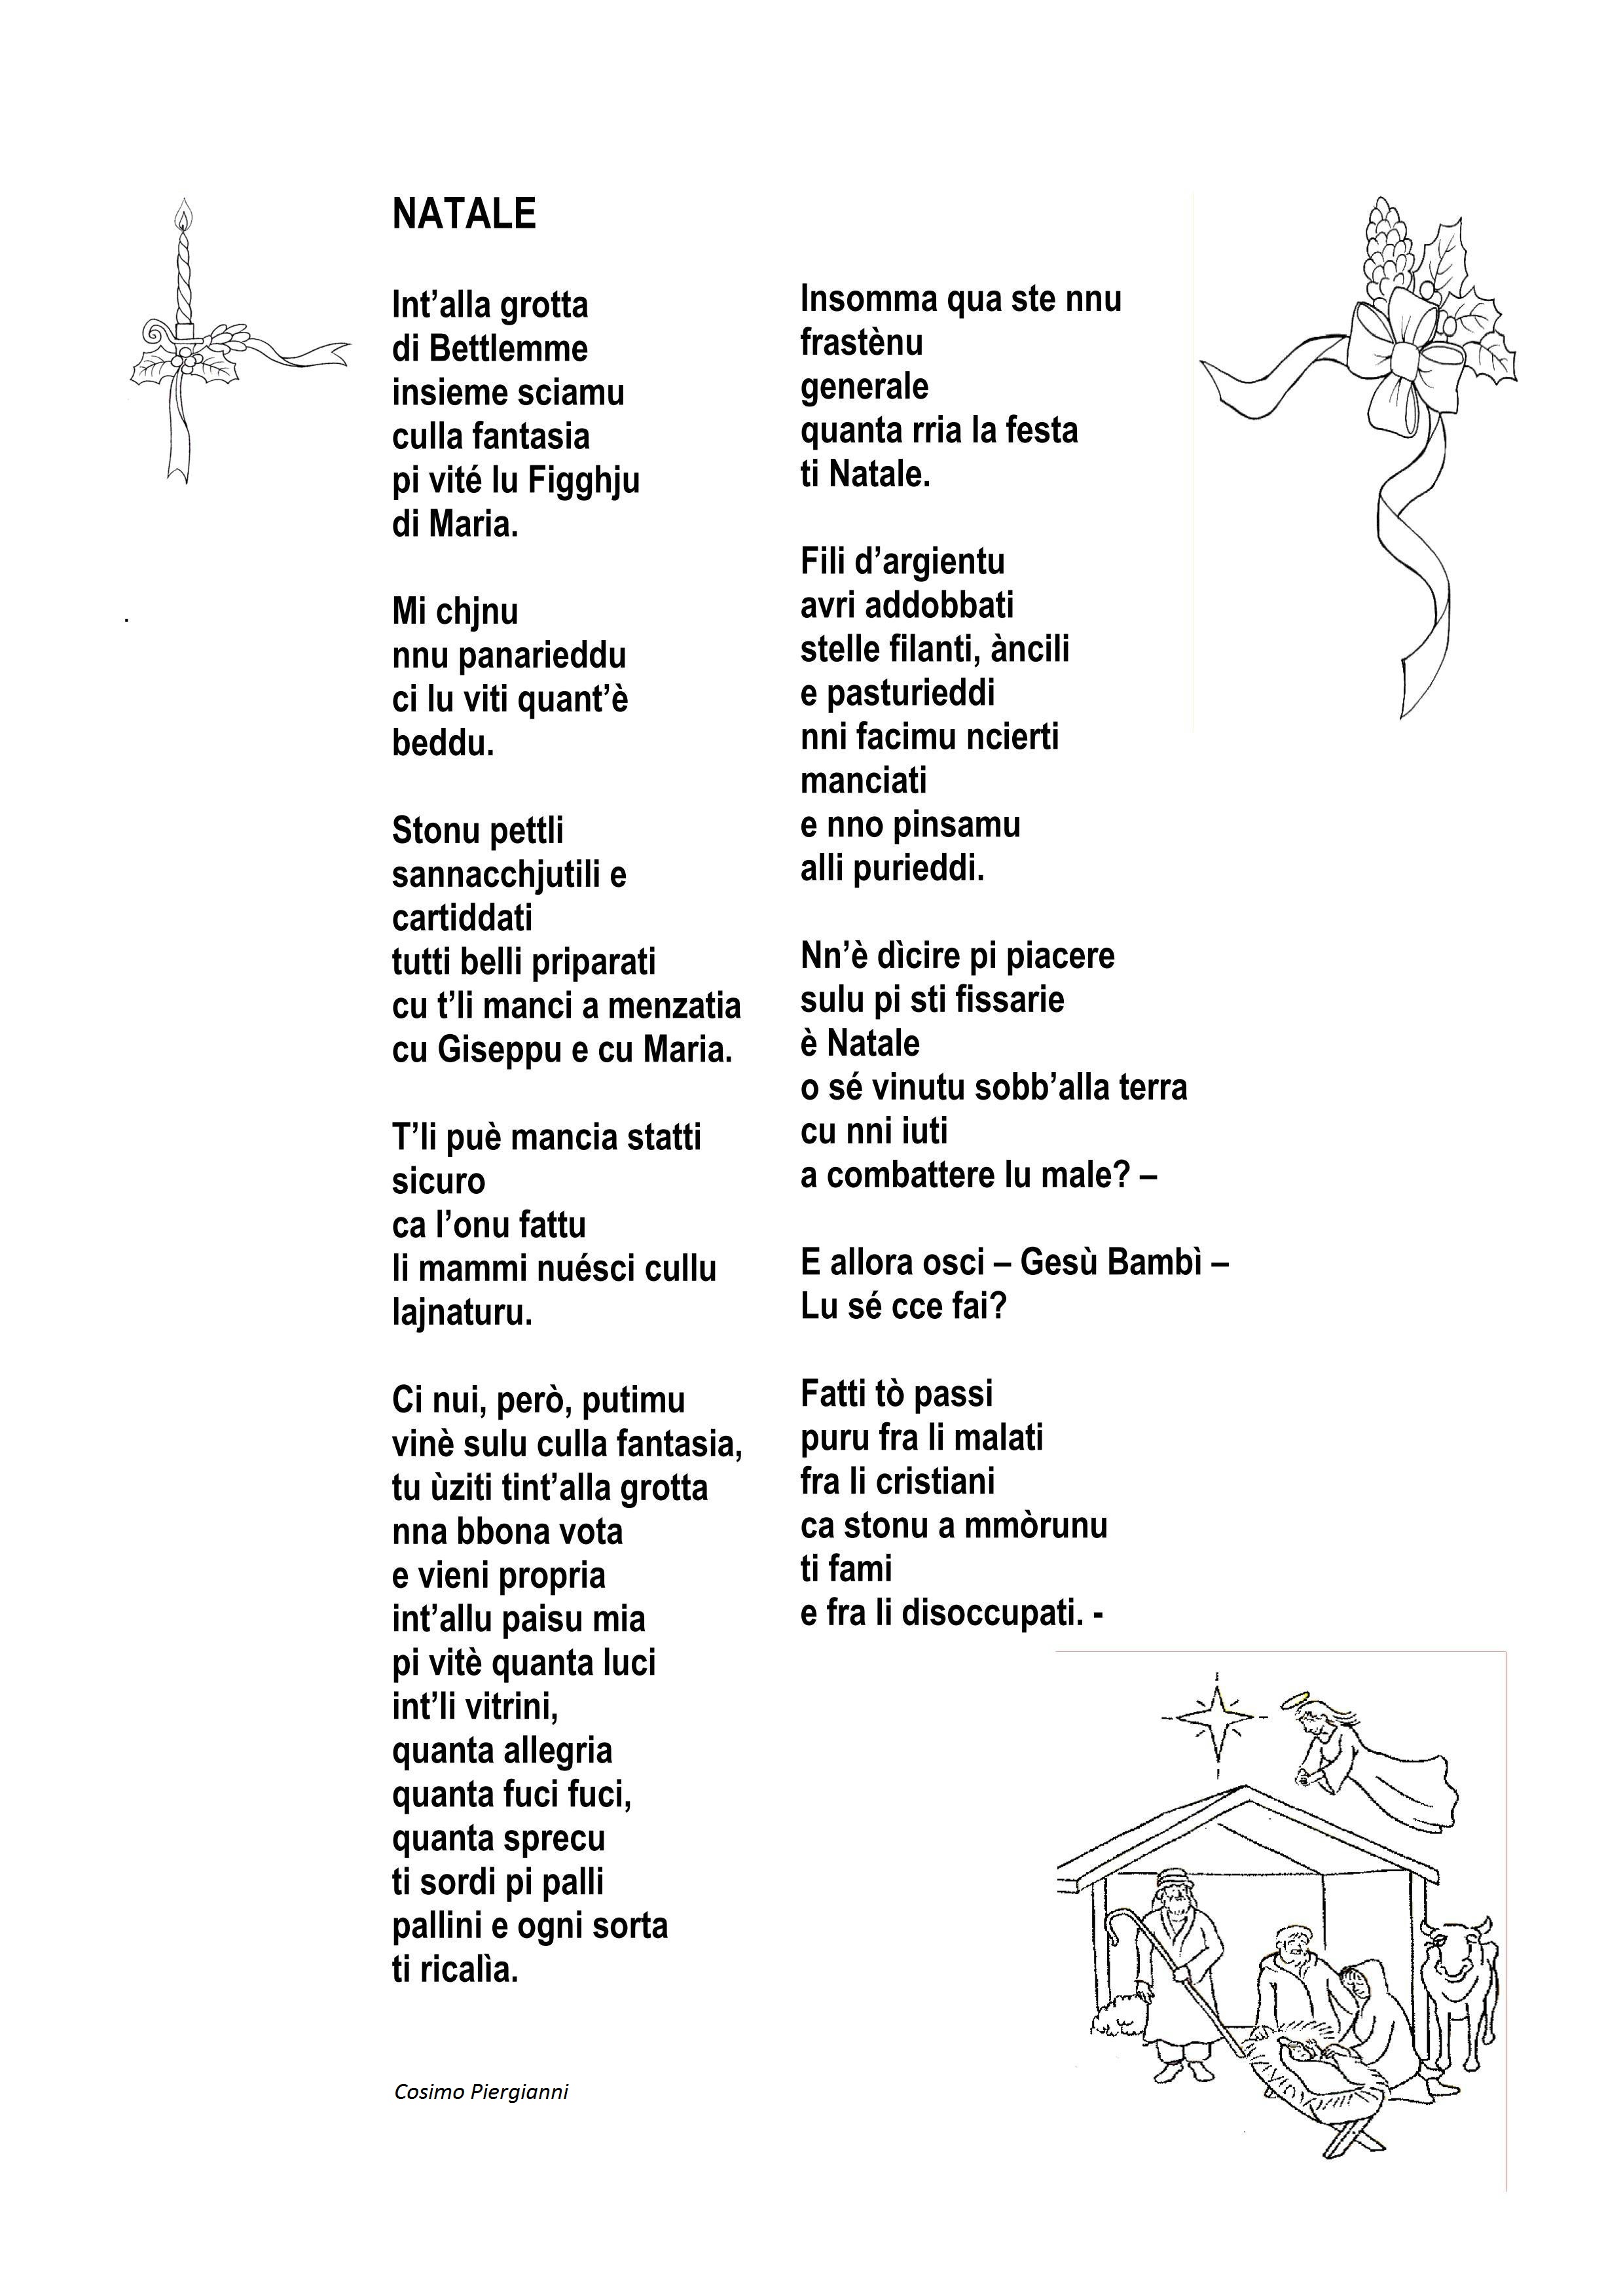 Poesie Di Natale Anni 60.Antologia Di Poesie Dialettali Per Natale Grottagliesita Blog